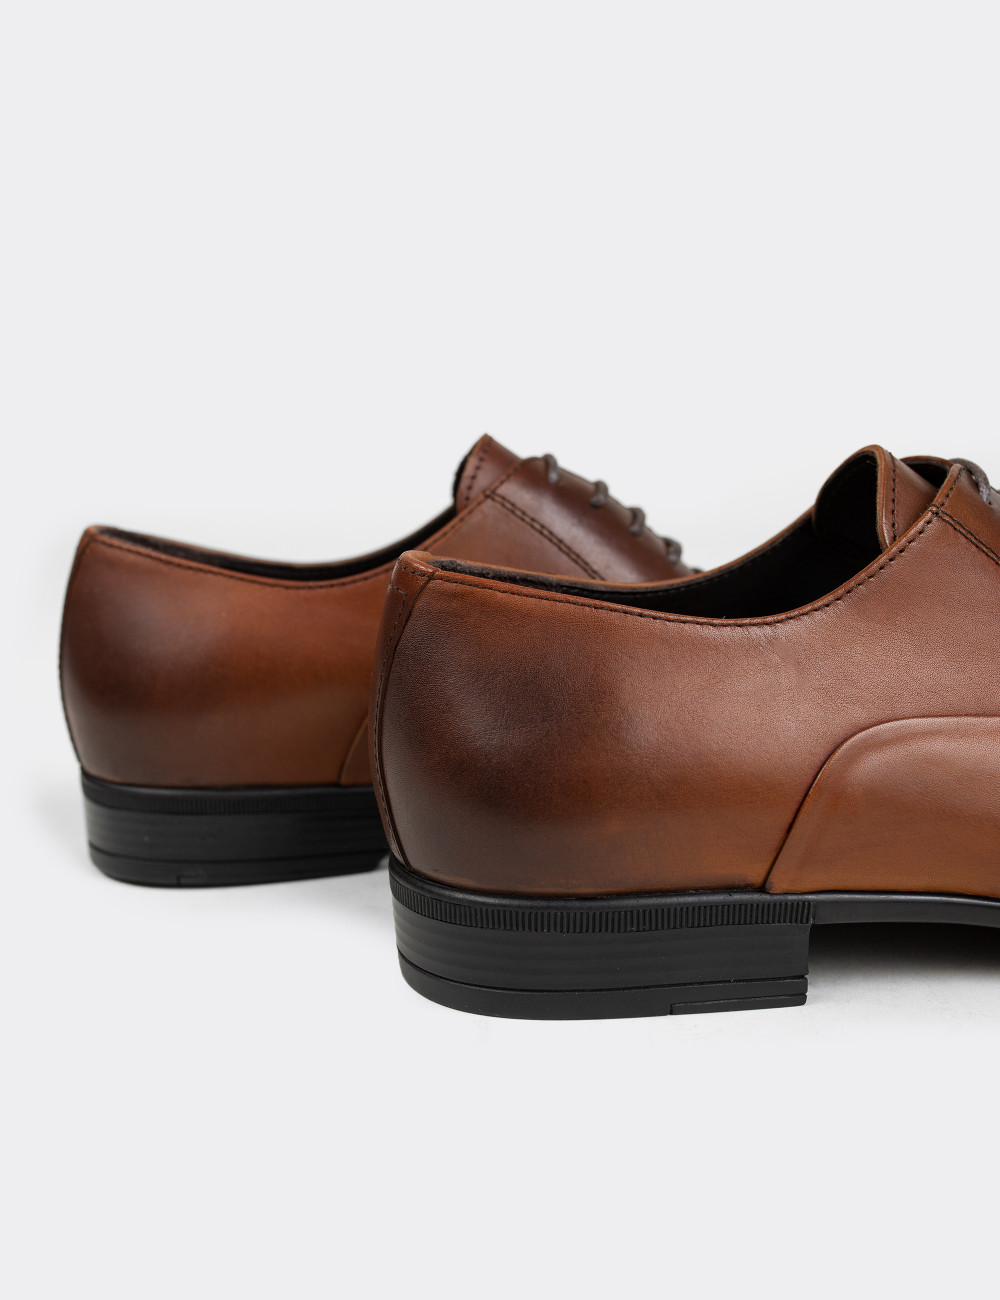 Hakiki Deri Kahverengi Klasik Erkek Ayakkabı - 01653MKHVM02